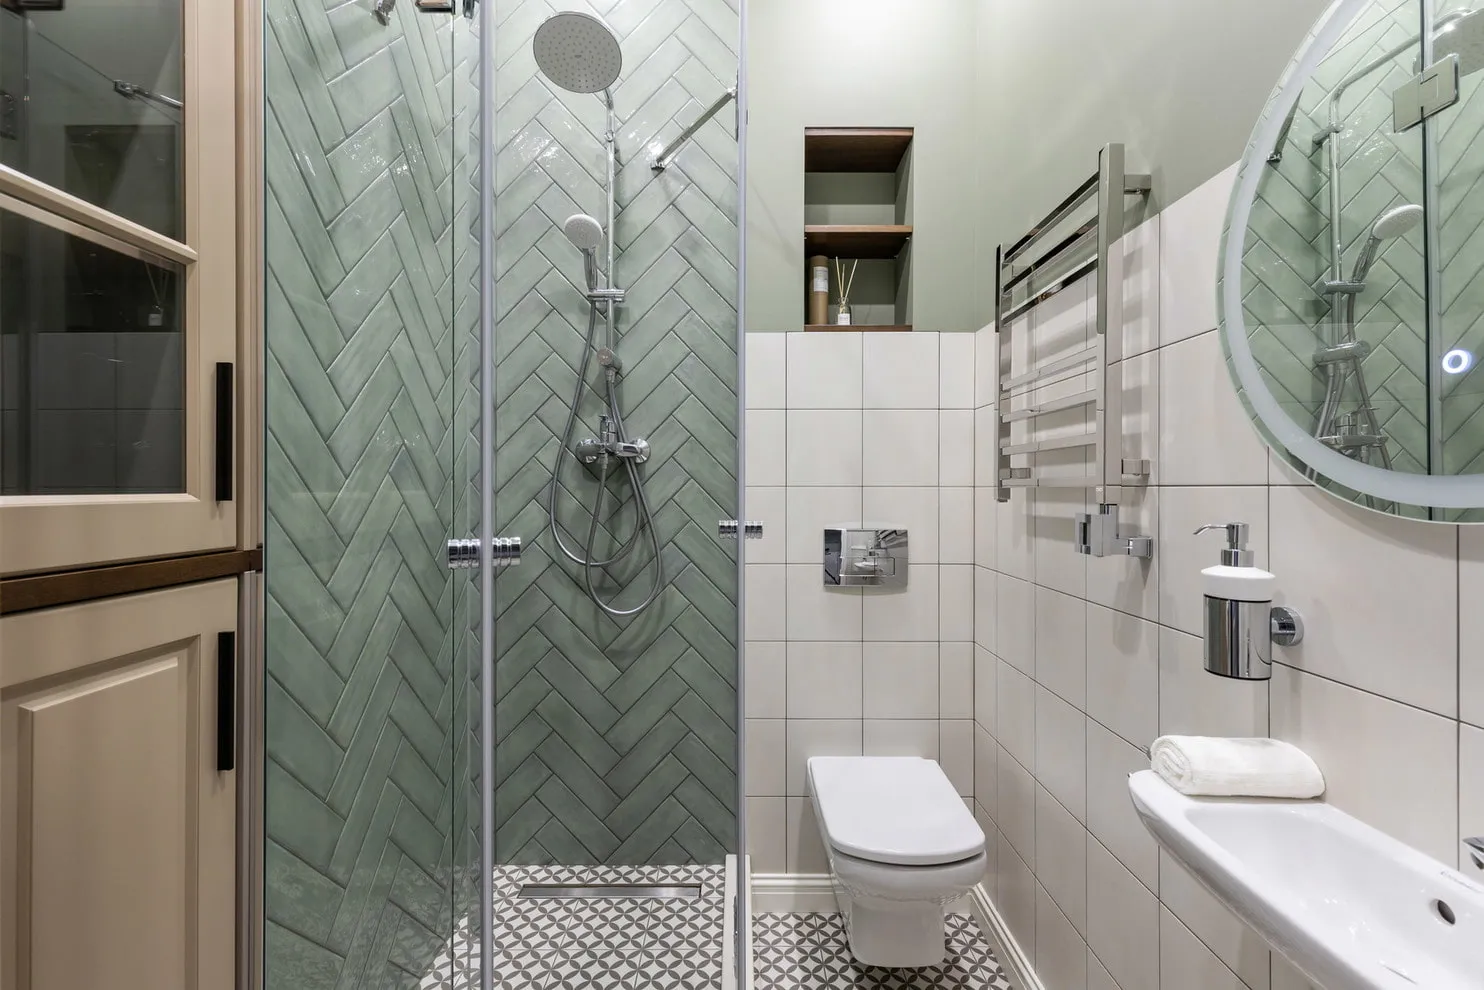 ТОП-10 решений в дизайне интерьера ванной комнаты